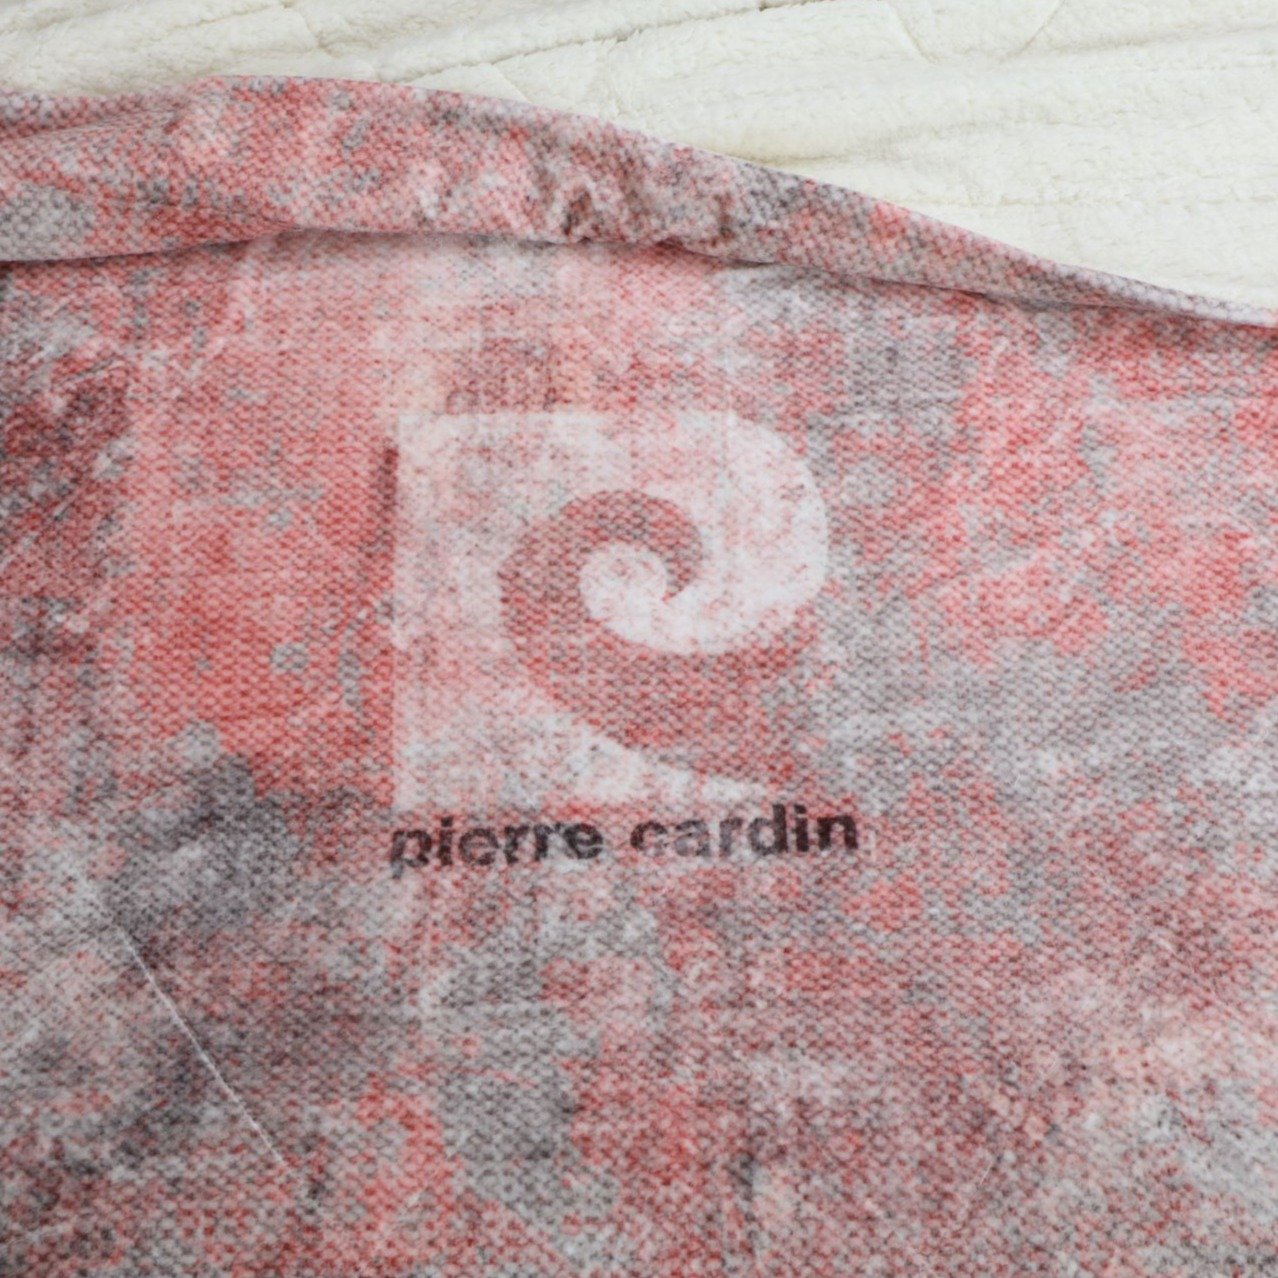 Pierre Cardin Blankets Zenith 3011